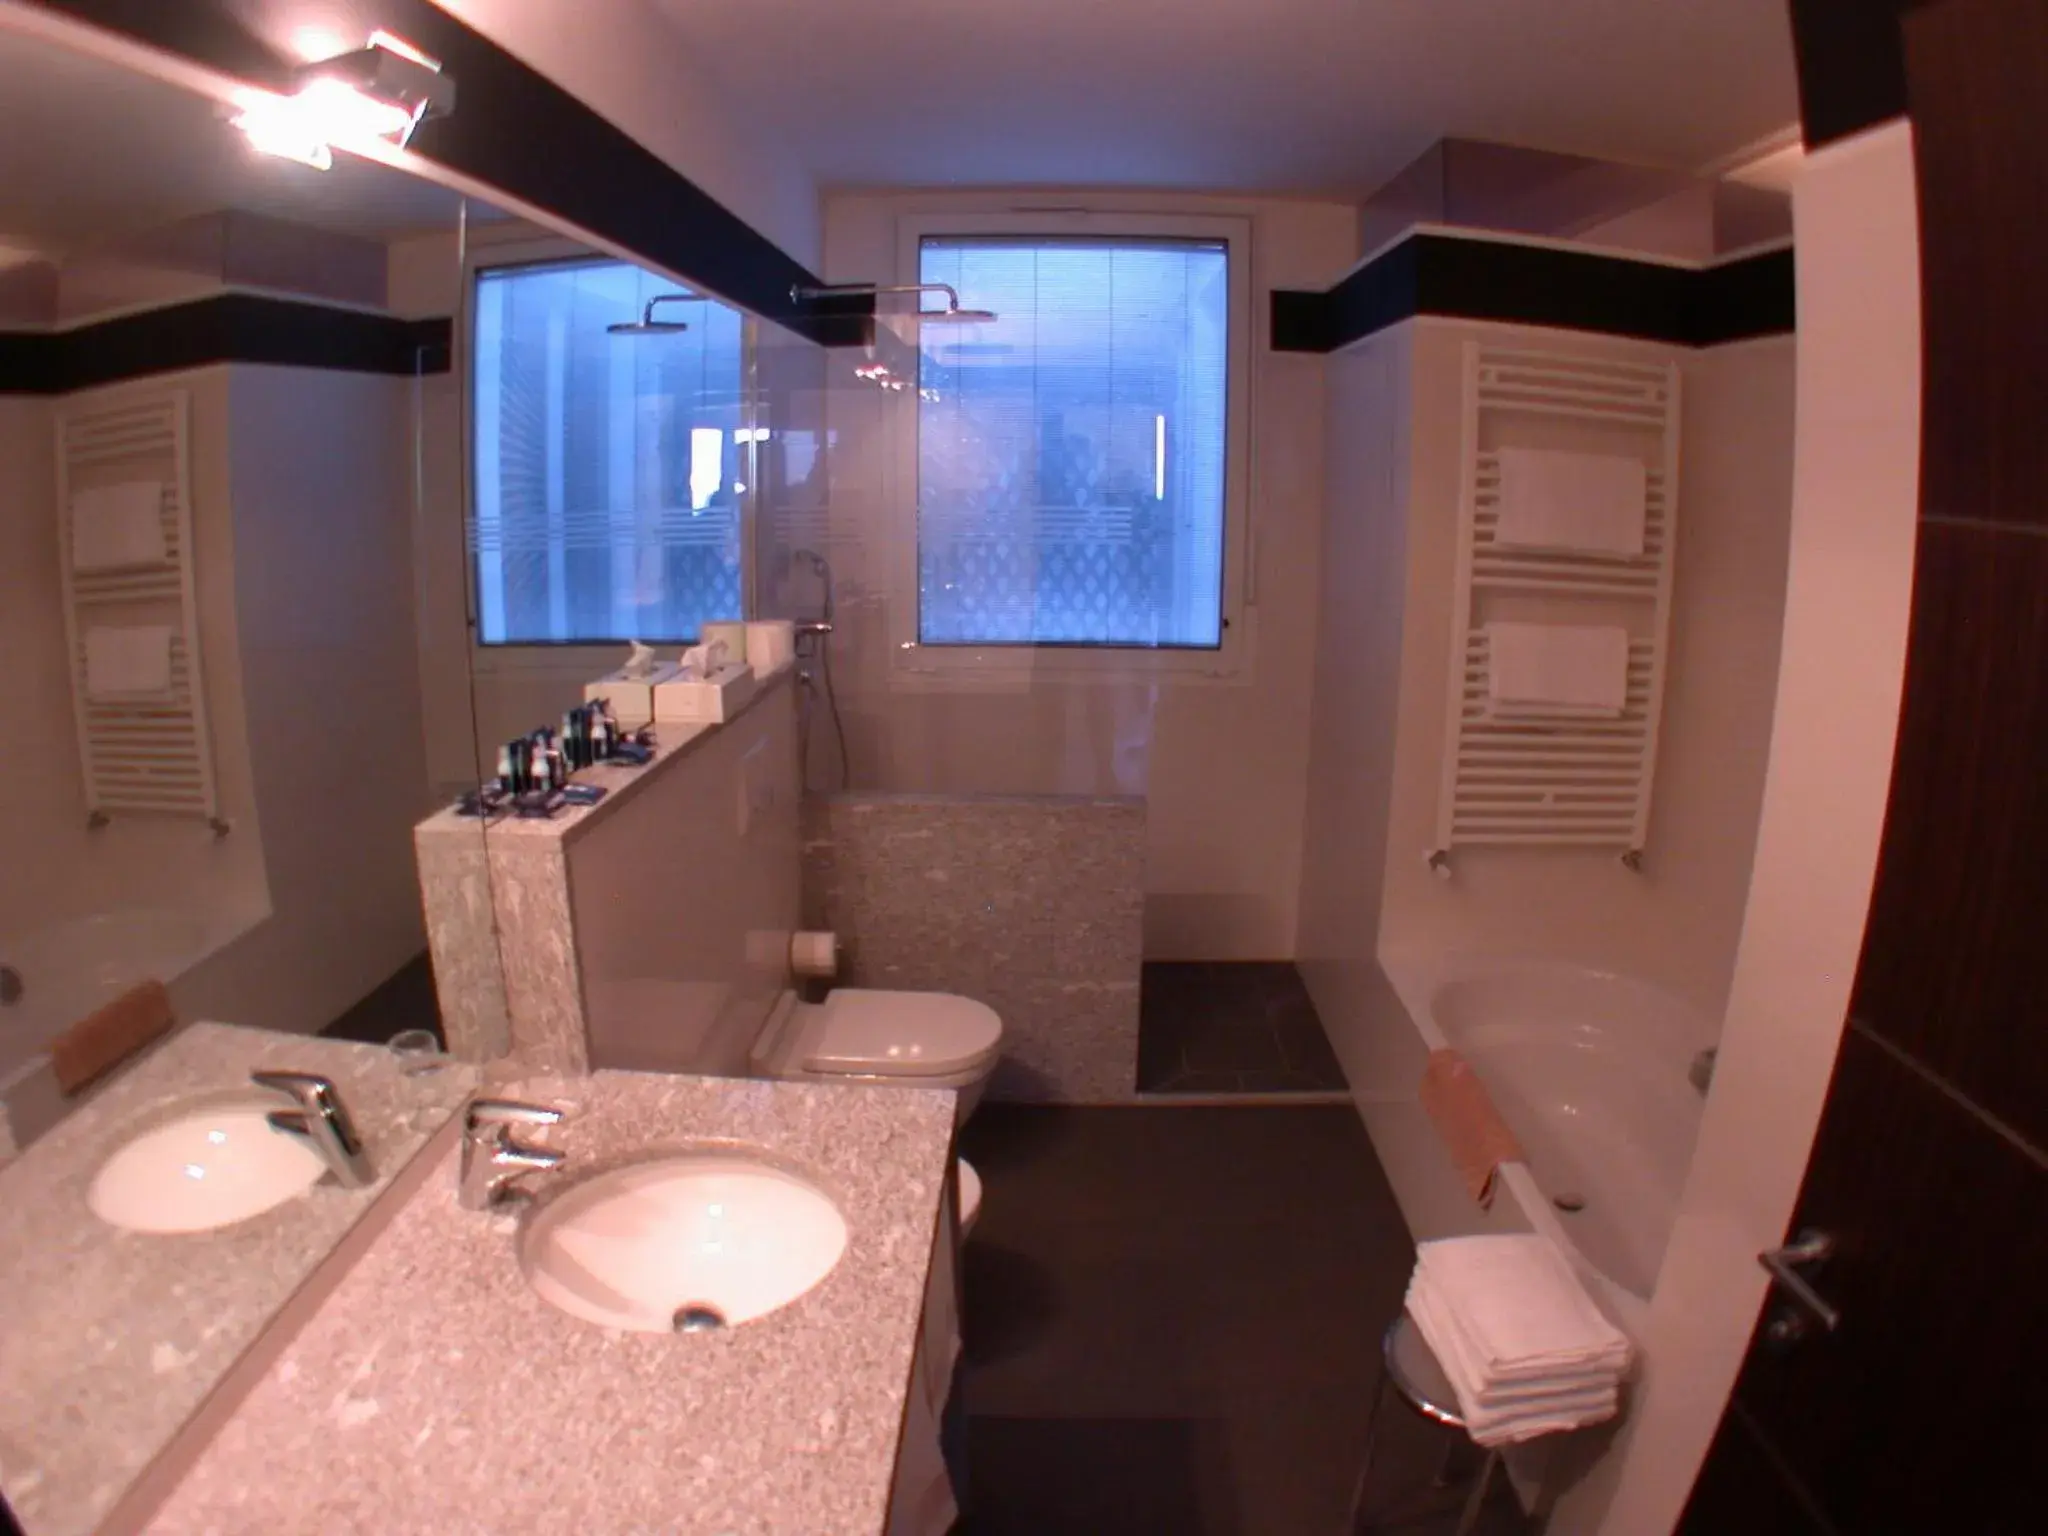 Bathroom in Hotel Metropole Suisse